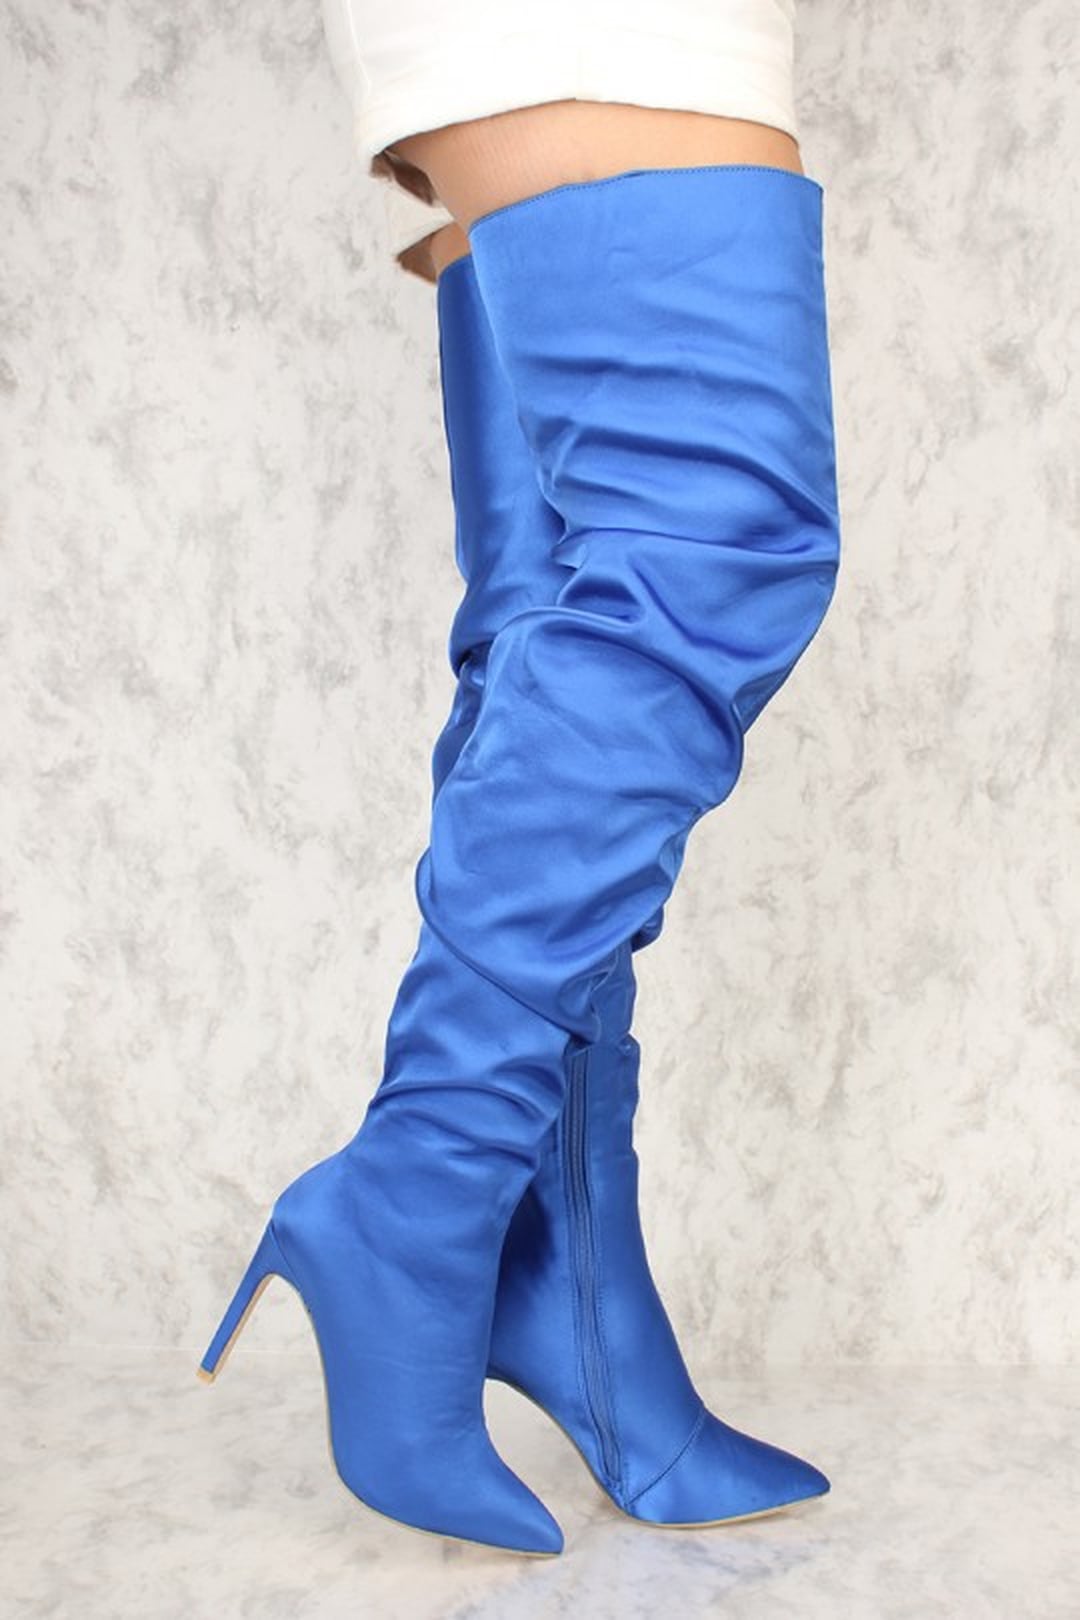 Hailey Baldwin's Sexy Shoes | POPSUGAR Fashion